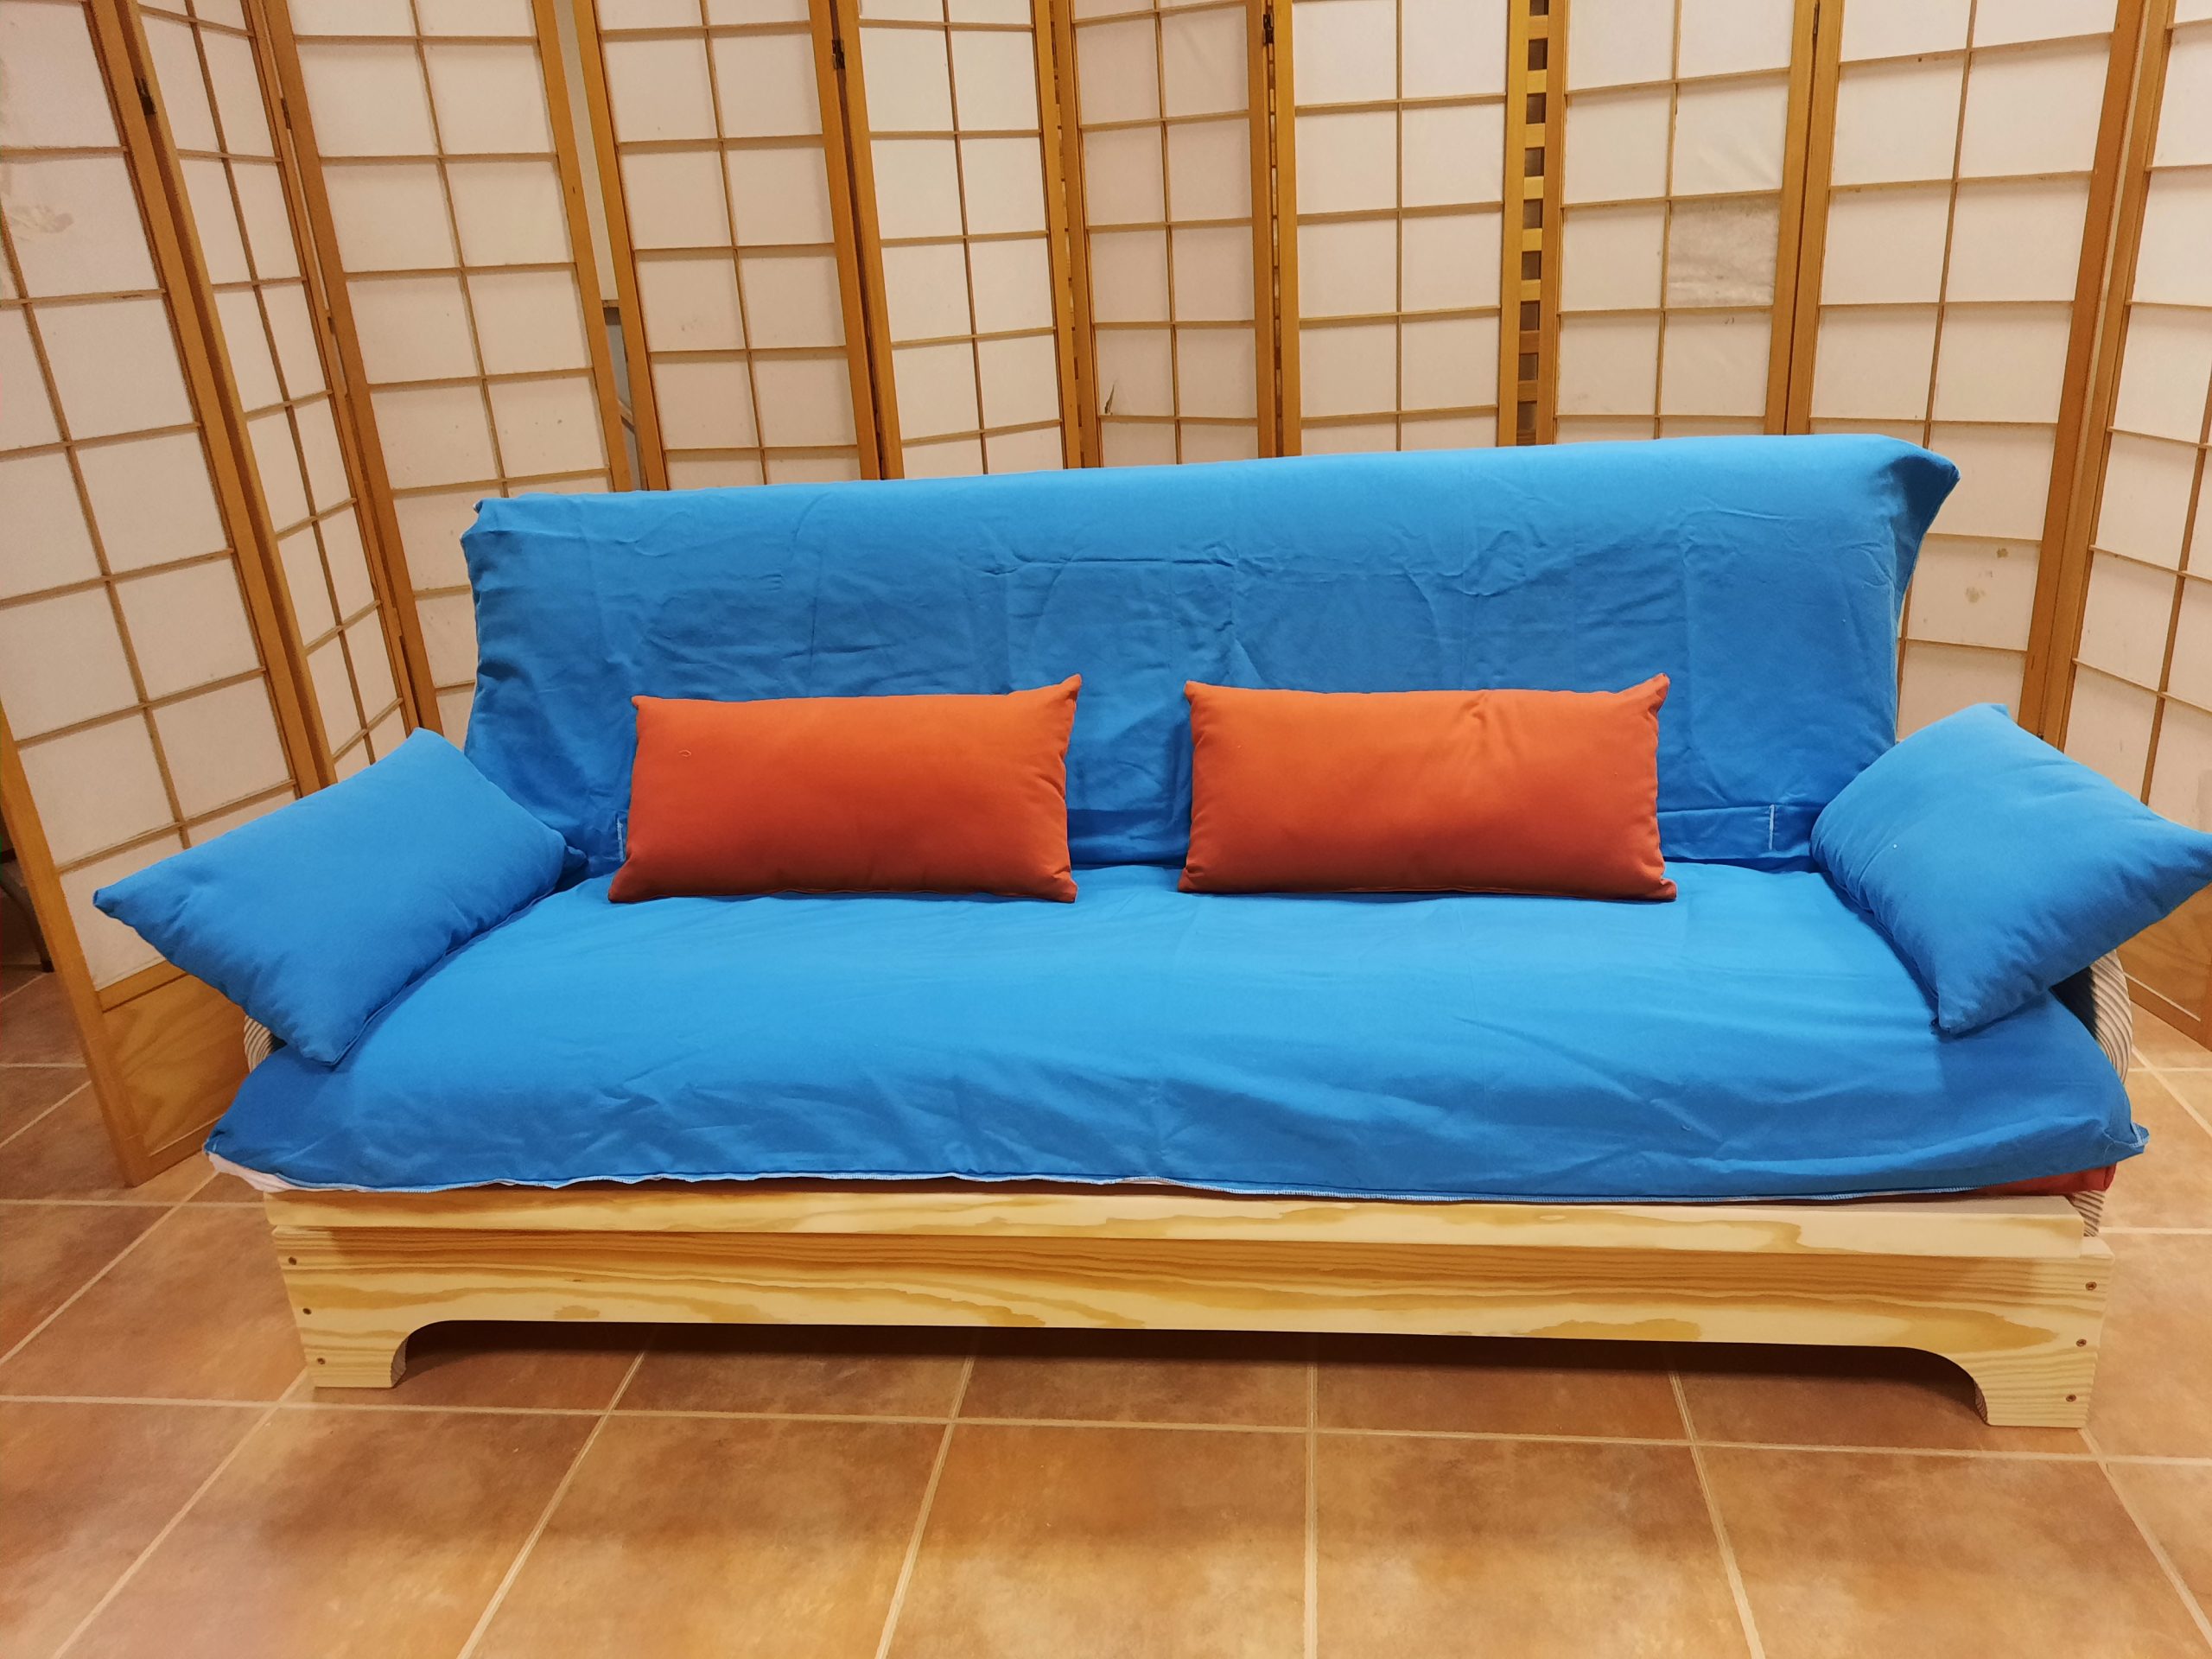 Continental Inadecuado Tendero Sofa cama Nueva Linea Eco. - Fustaforma